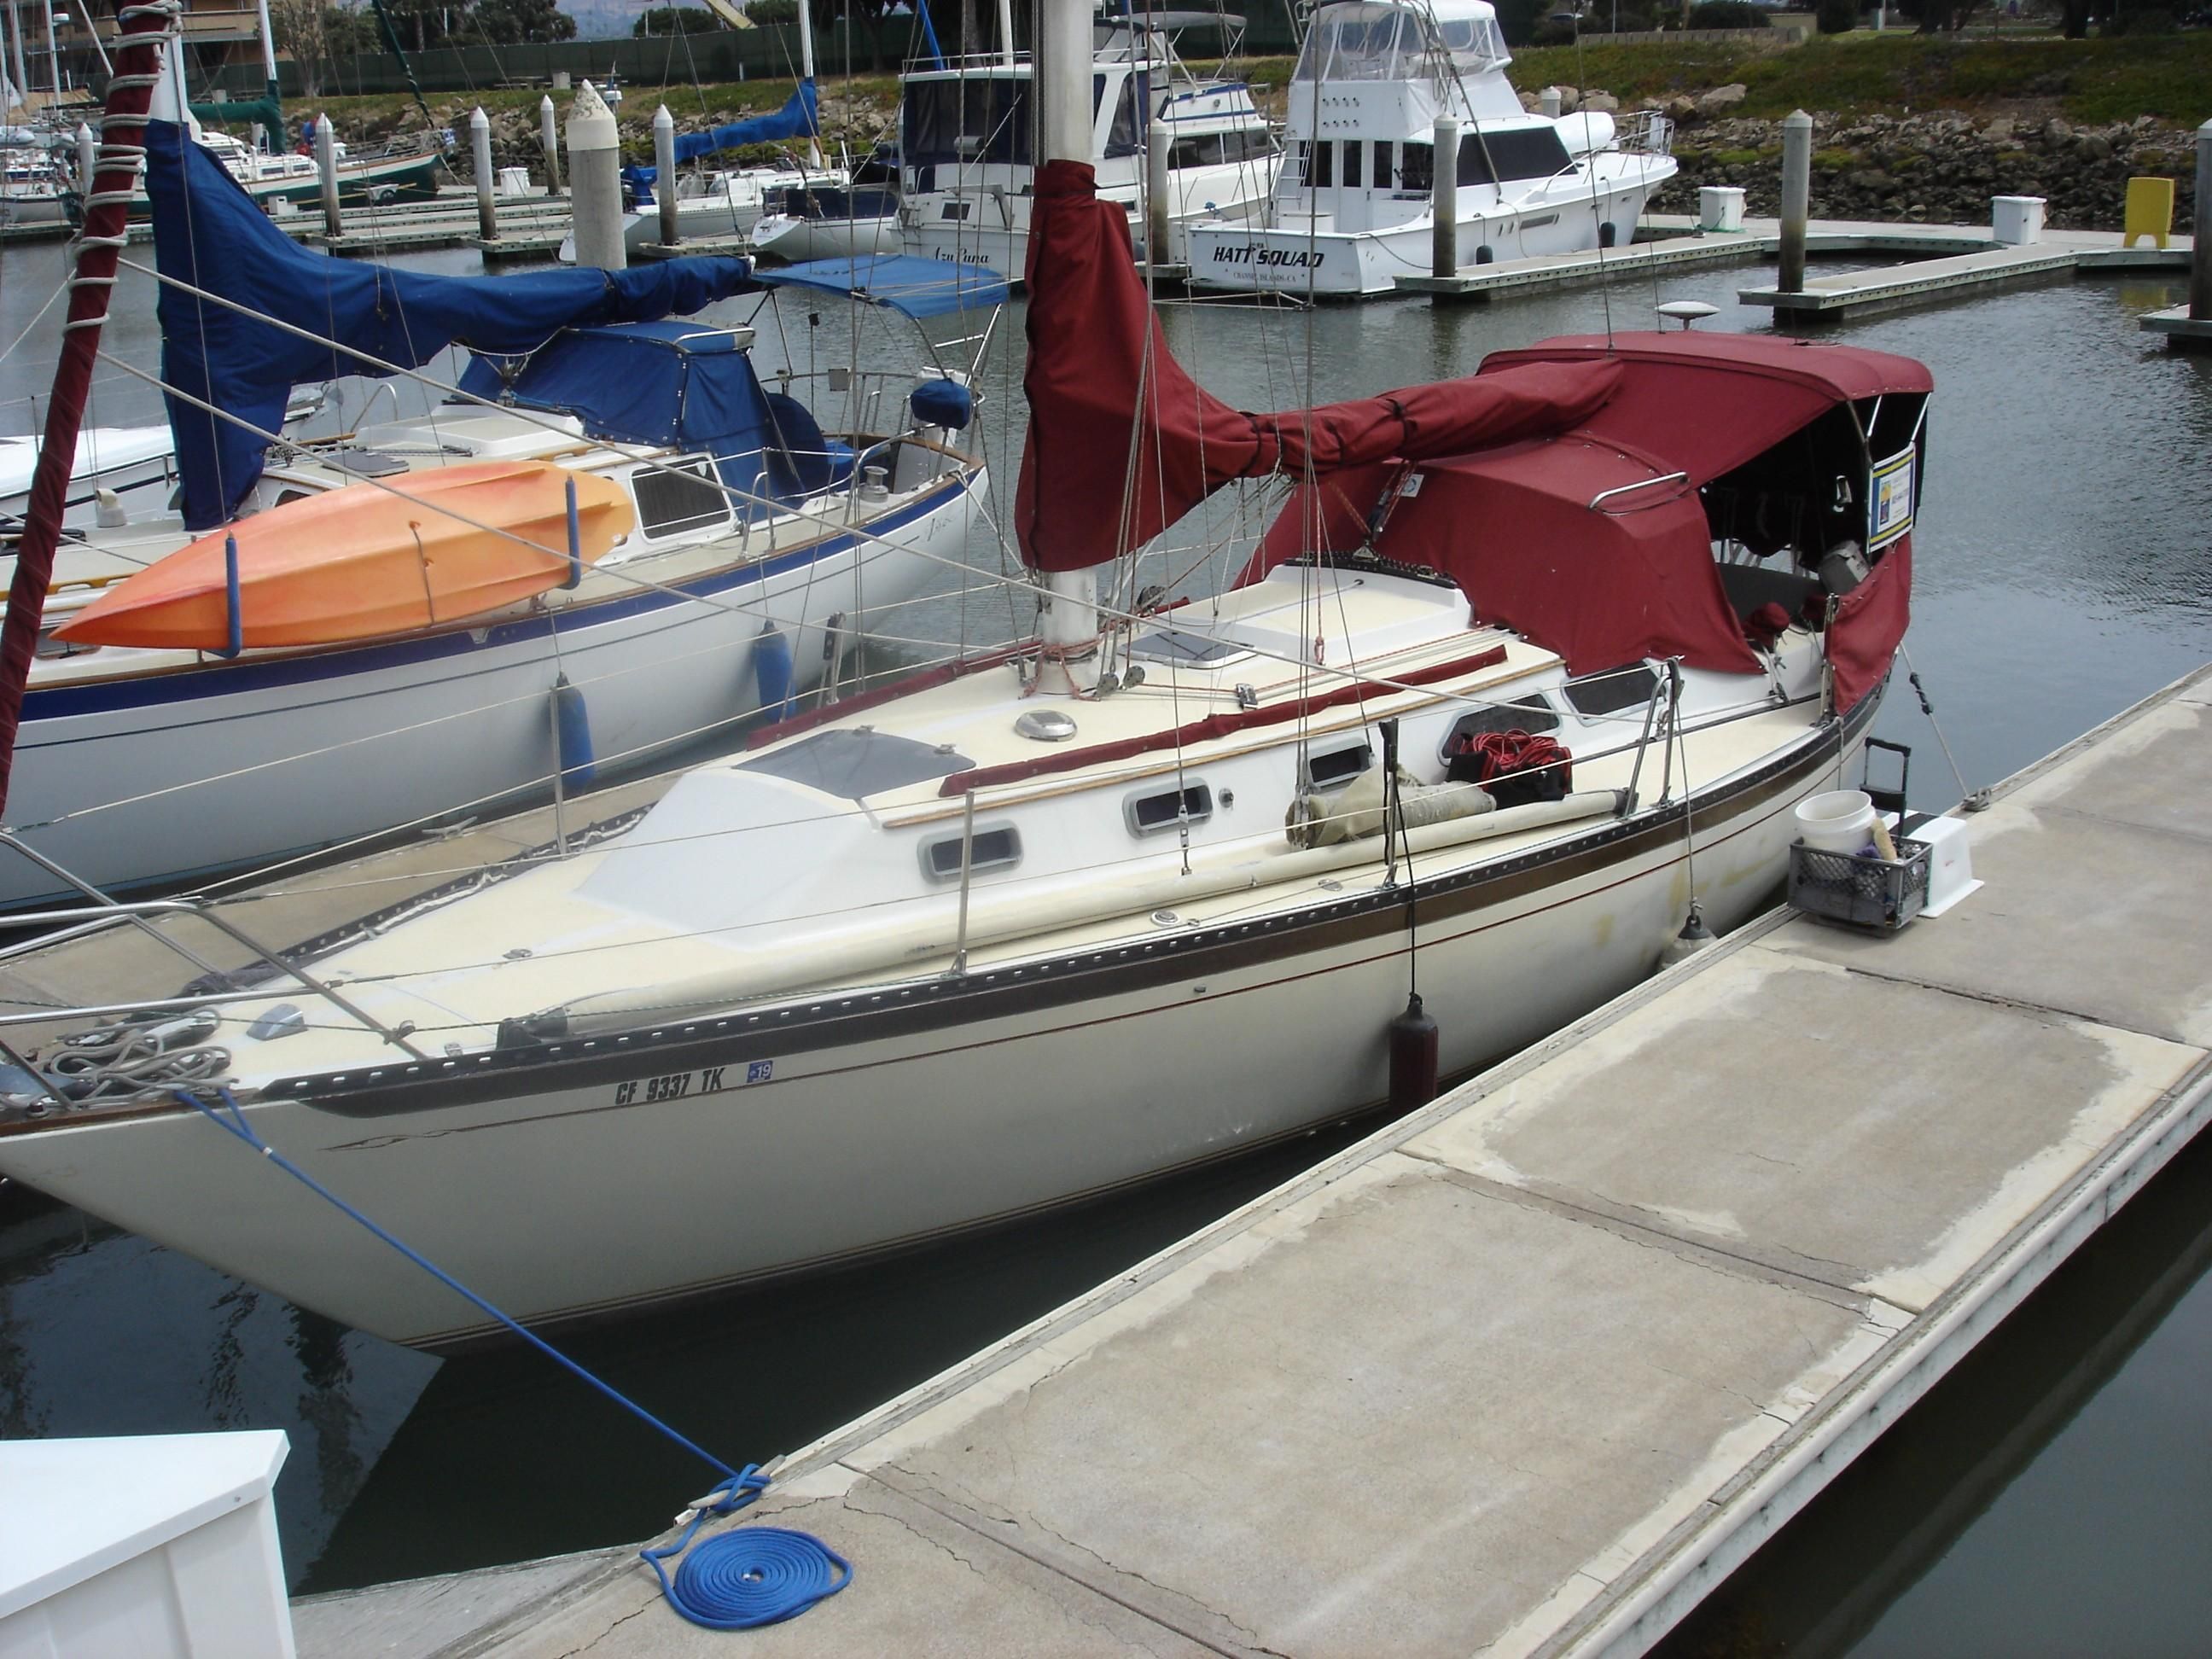 islander 36 sailboat for sale